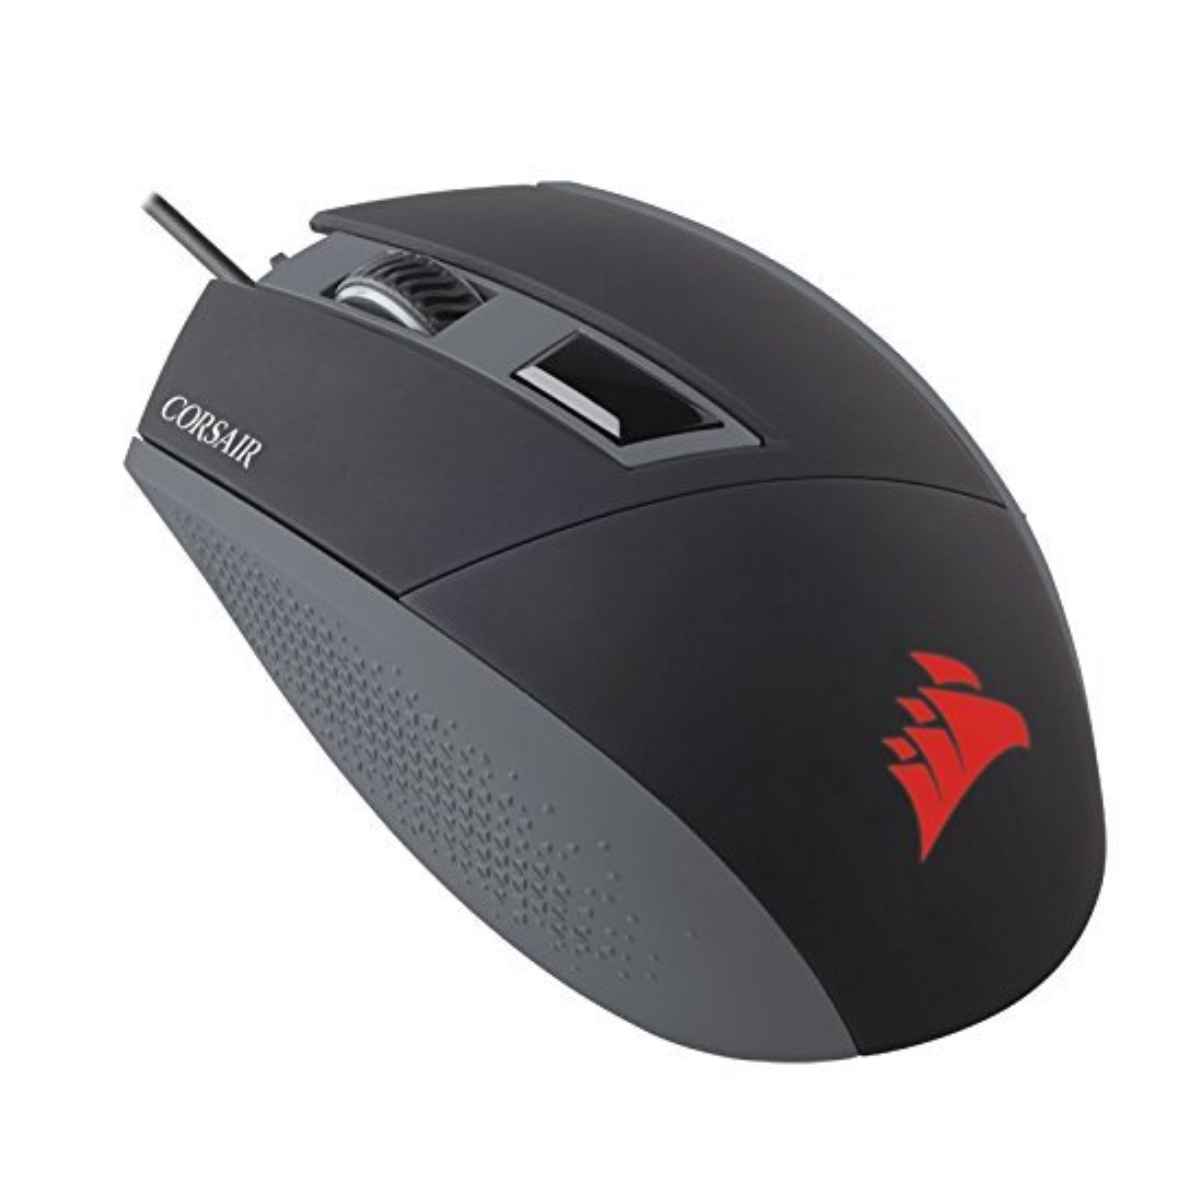 Corsair KATAR Gaming Mouse